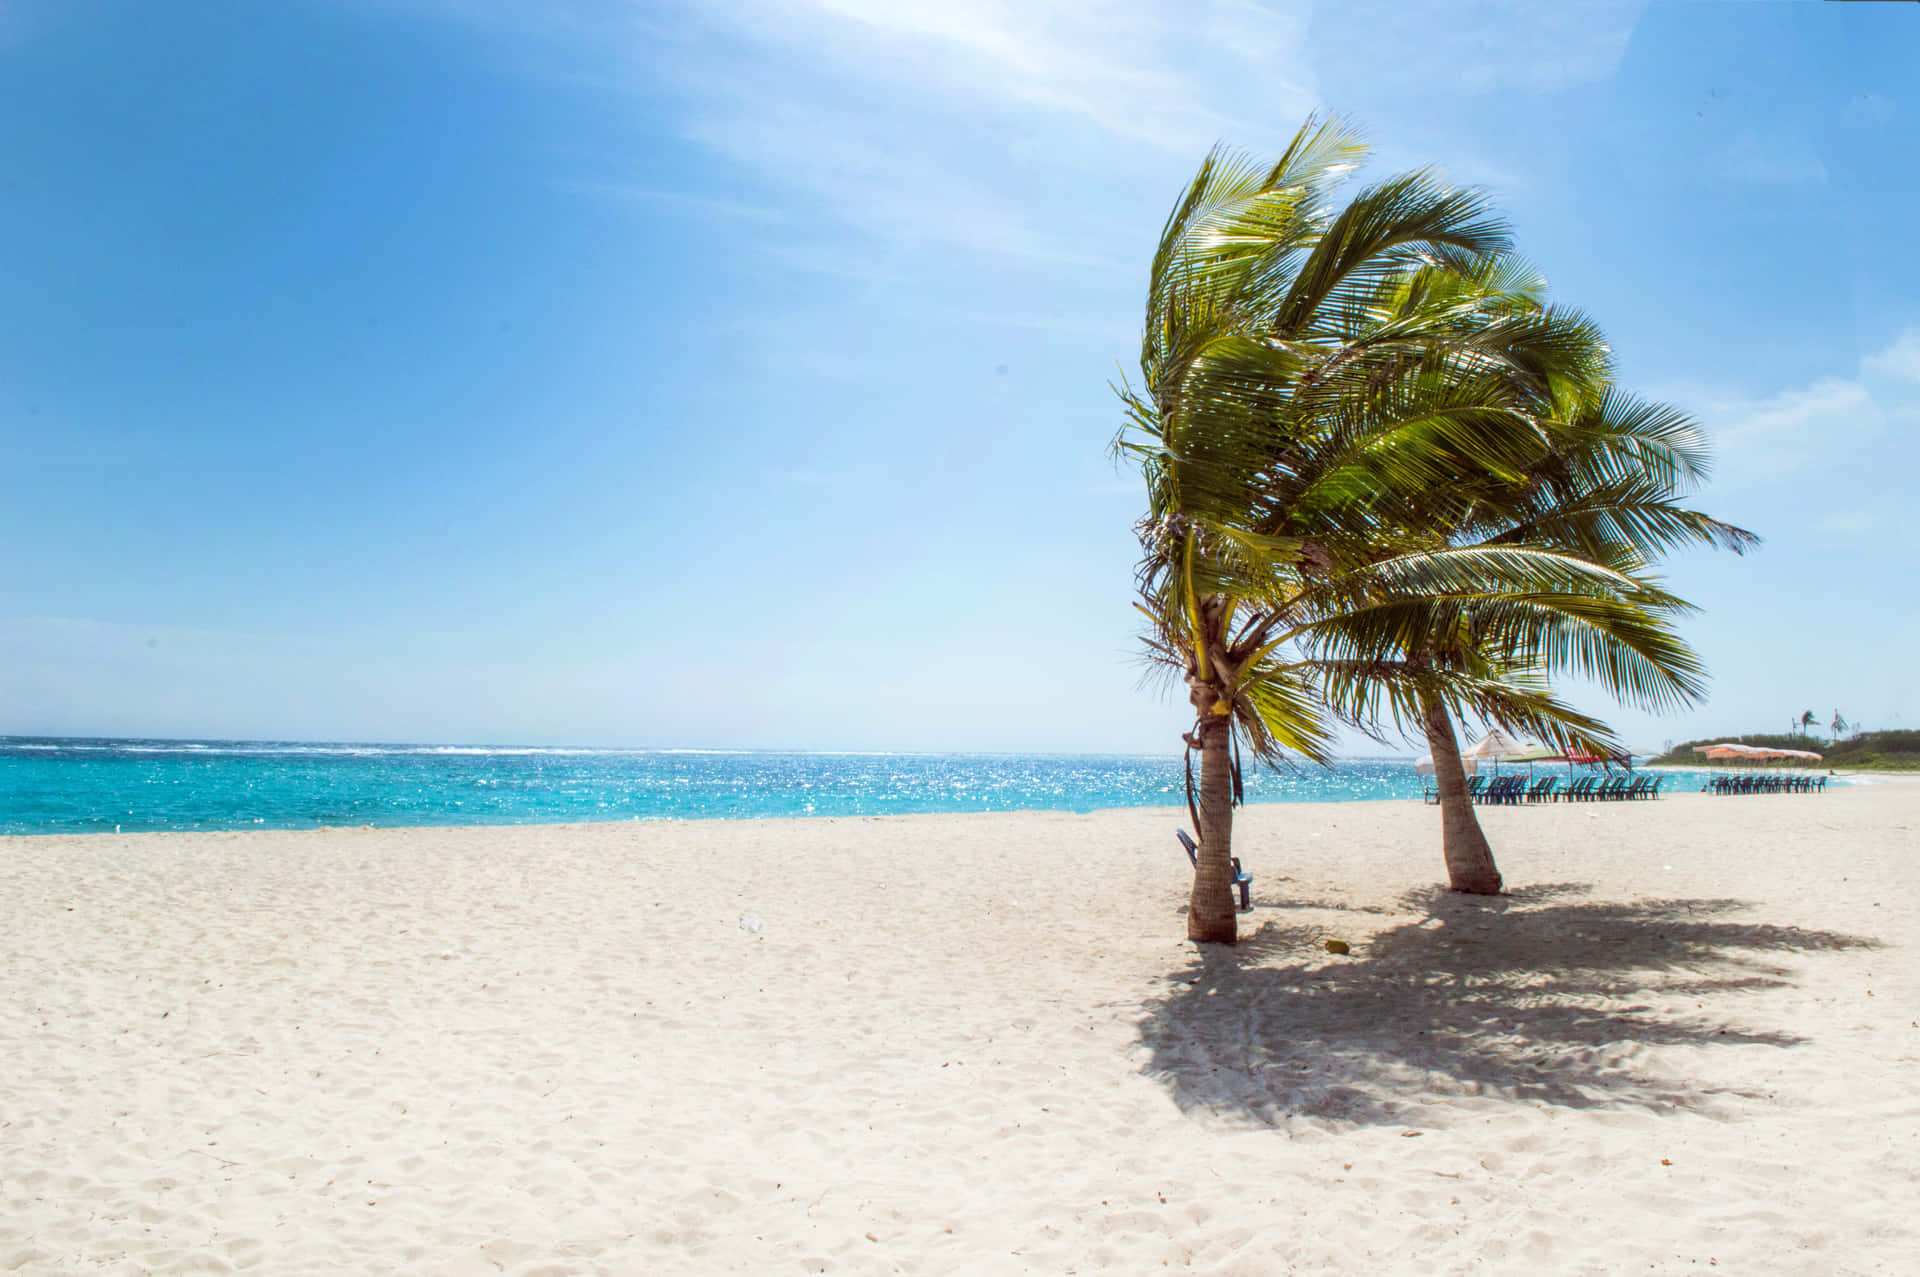 Aproveiteuma Manhã De Relaxamento E Reflexão Na Bela Praia Tropical.